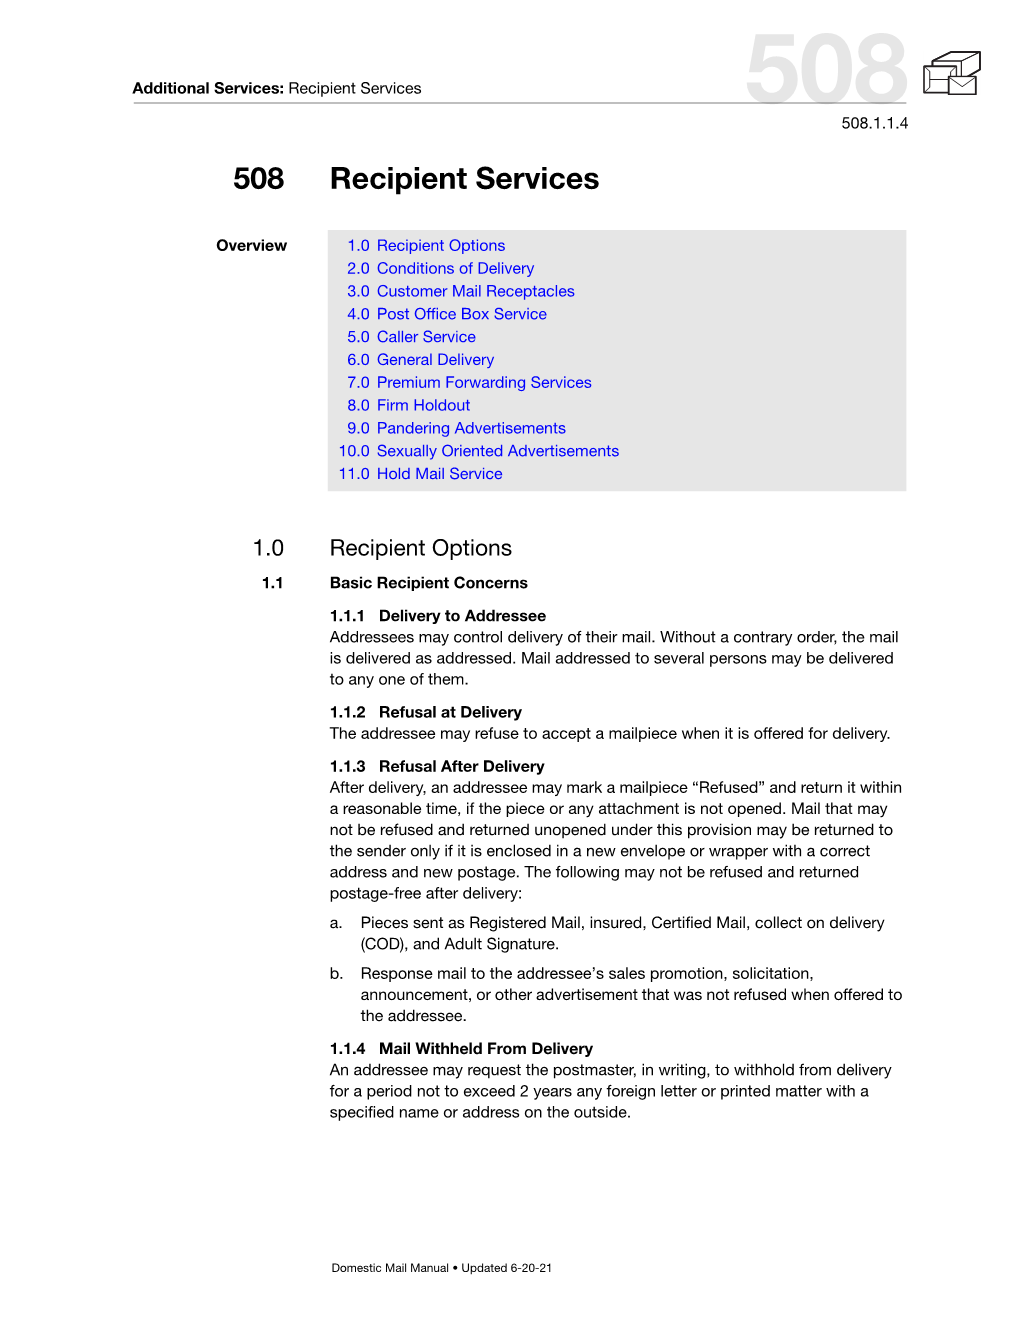 DMM 508 Recipient Services